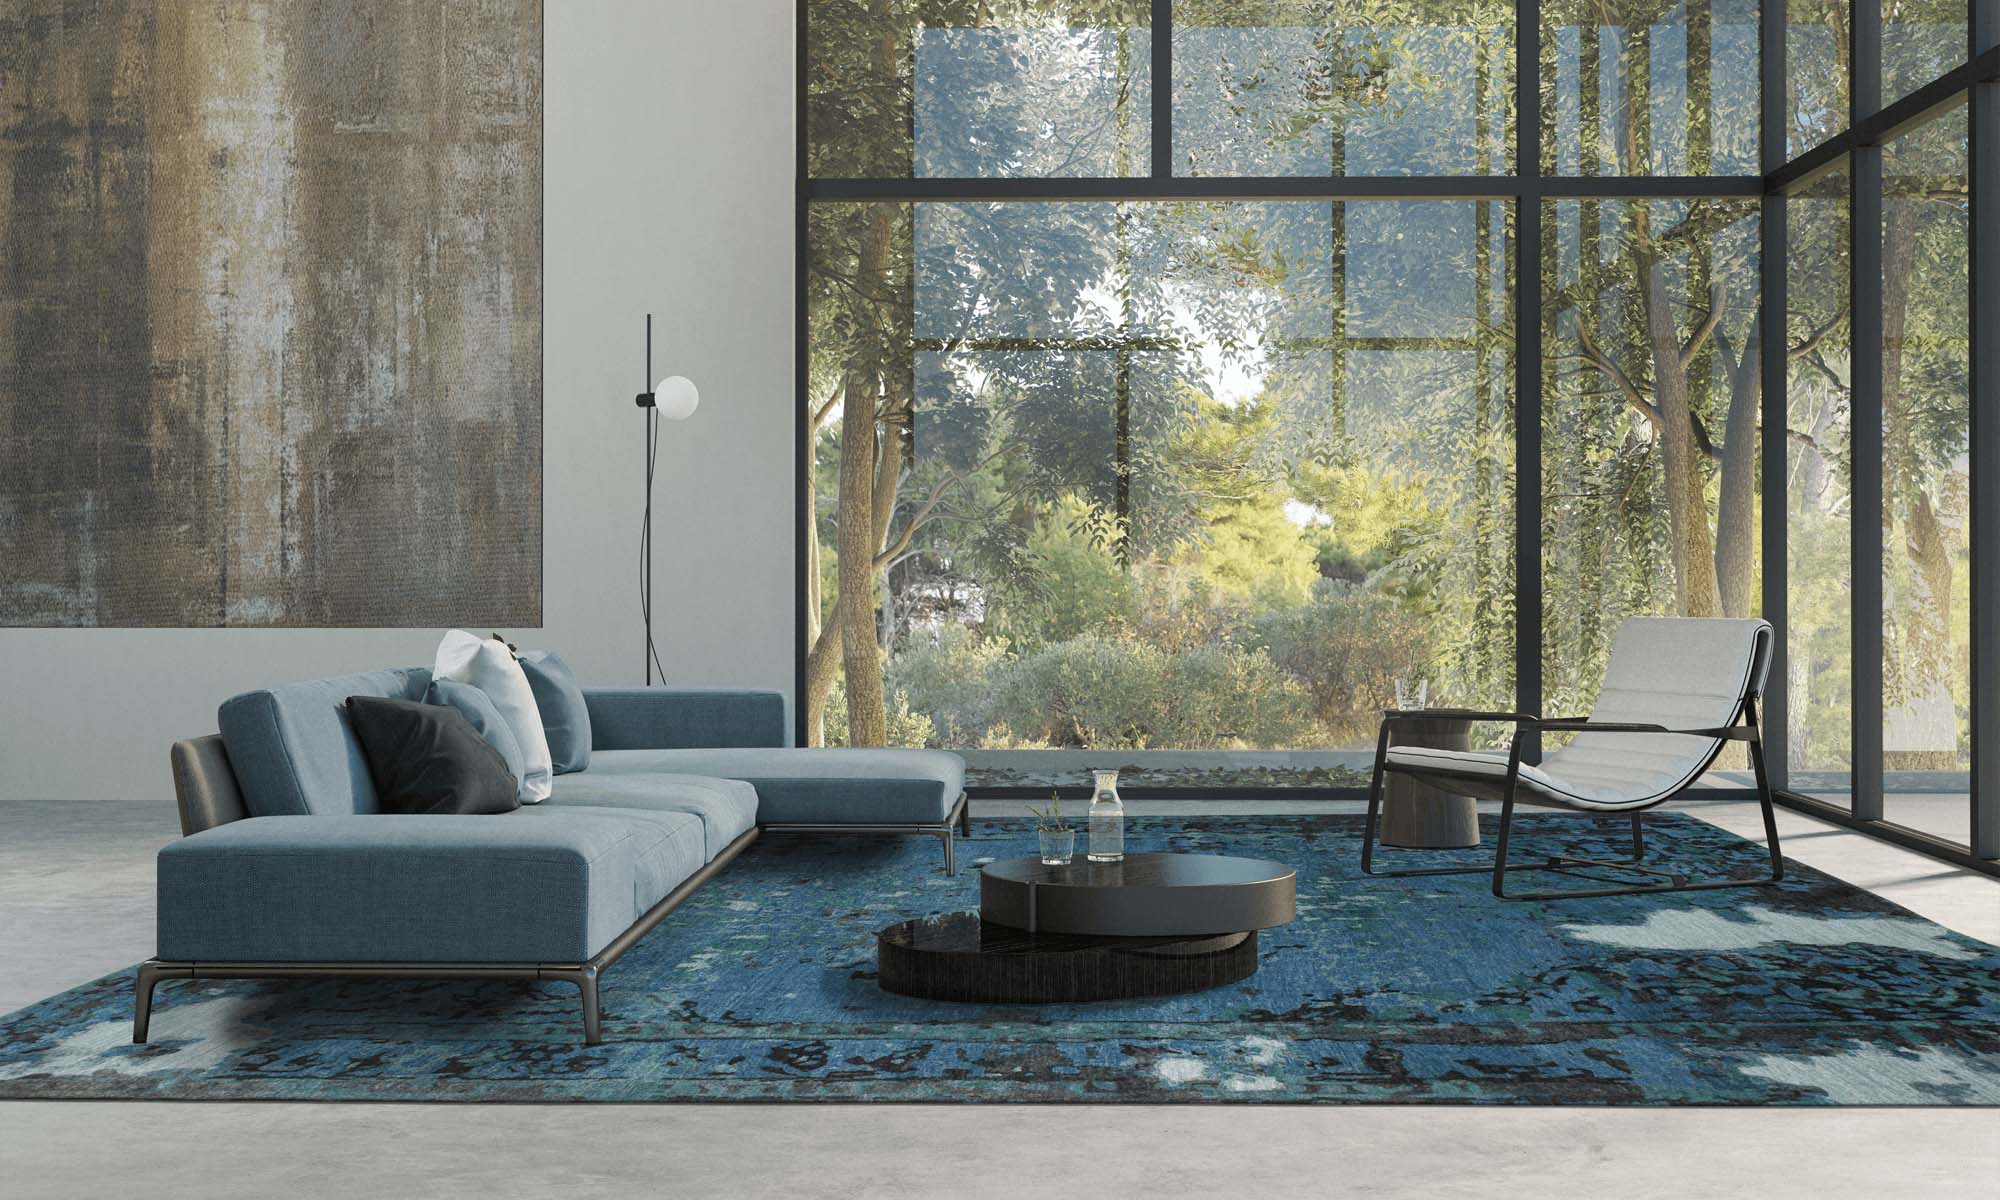 Wohnraum mit großer Glasfläche mit Blick in die Natur und Geba Teppich "Antique blue" - Geba Teppich